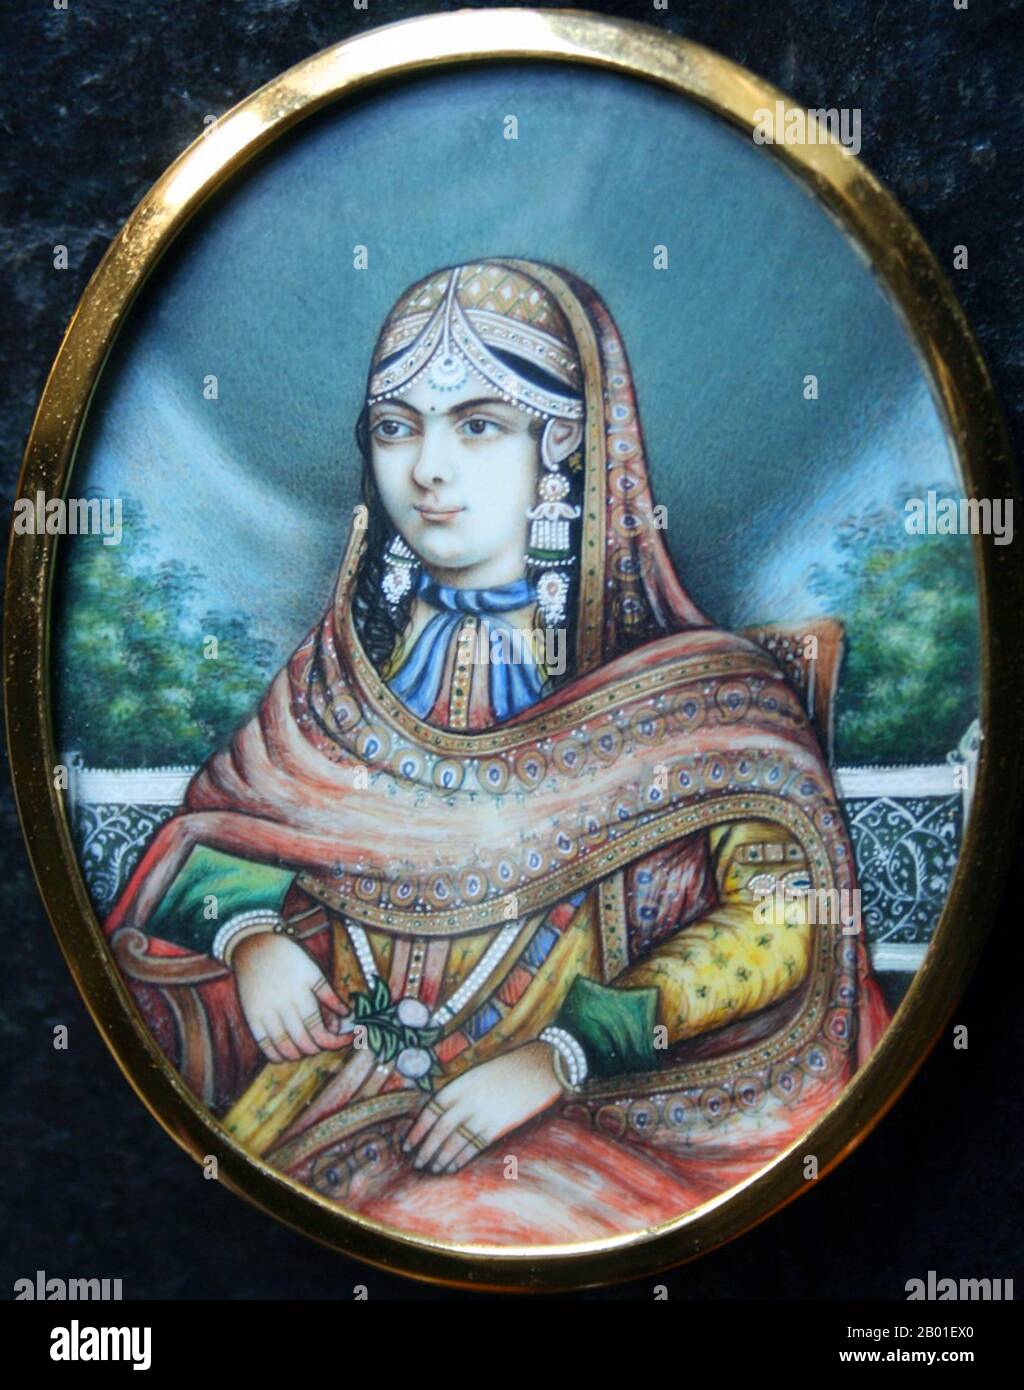 Indien: Kaiserin Jodhabai (ca. 1542. Bis 19. Mai 1623), Ehefrau des 3. Mogul-Kaisers Akbar (25. Oktober 1542 bis 27. Oktober 1605). Posthume Portrait, c. 1850. Mariam uz-Zamani Begum Sahiba (kaiserliche Prinzessin), geborene Rajkumari (Prinzessin) Hira Kunwari, alias Harkha Bai war eine Rajput-Prinzessin, die nach ihrer Heirat mit Mogul-Kaiser Akbar zur Mogul-Kaiserin wurde. Sie war die älteste Tochter von Kachwaha Rajput, Raja Bharmal von Amber, dem älteren Namen des Rajput-Staates Jaipur. Ihre Notsituation ergibt sich aus ihrer Ehe mit dem Mogul-Kaiser Jalaluddin Muhammad Akbar. Stockfoto